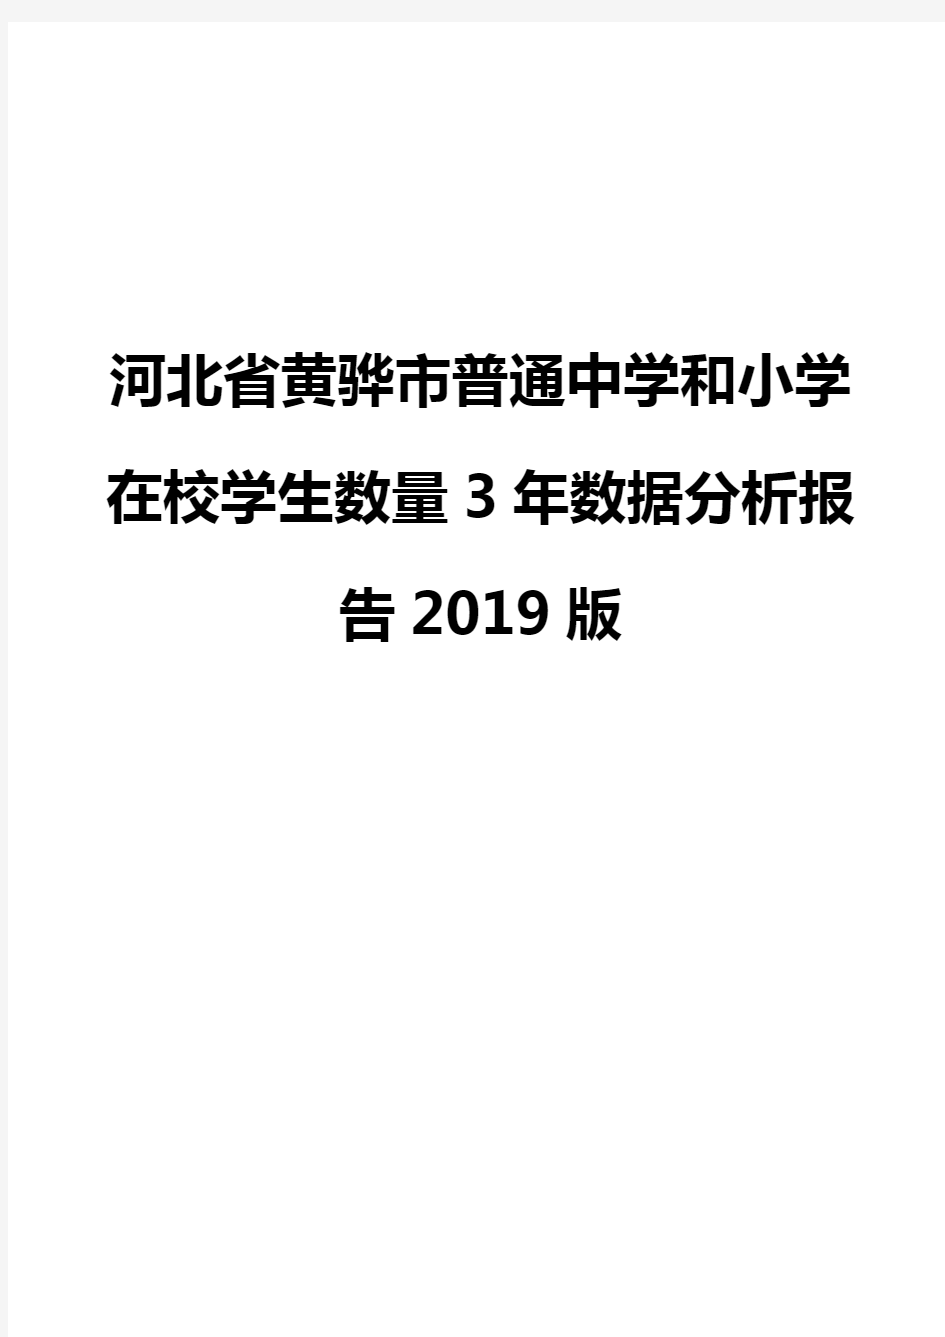 河北省黄骅市普通中学和小学在校学生数量3年数据分析报告2019版